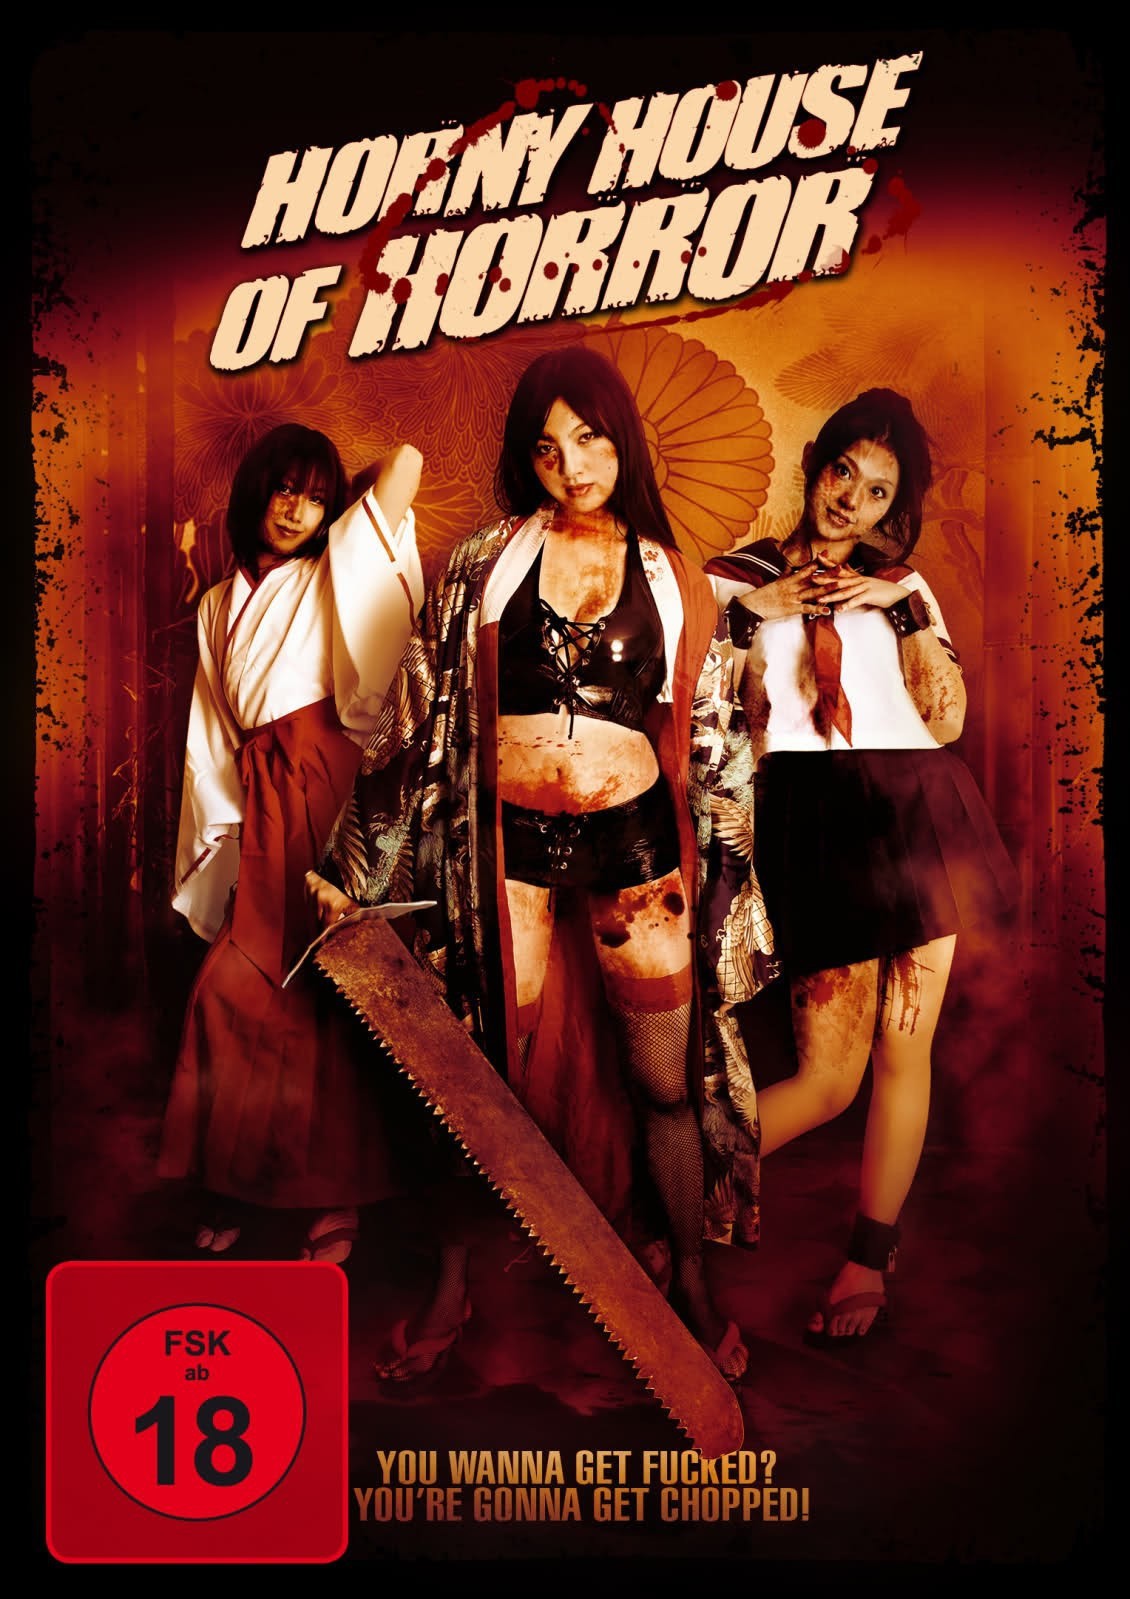 Horror Xxxxxx Movie - Watch Horny House of Horror (2013) Porn Full Movie Online Free -  WatchPornFree